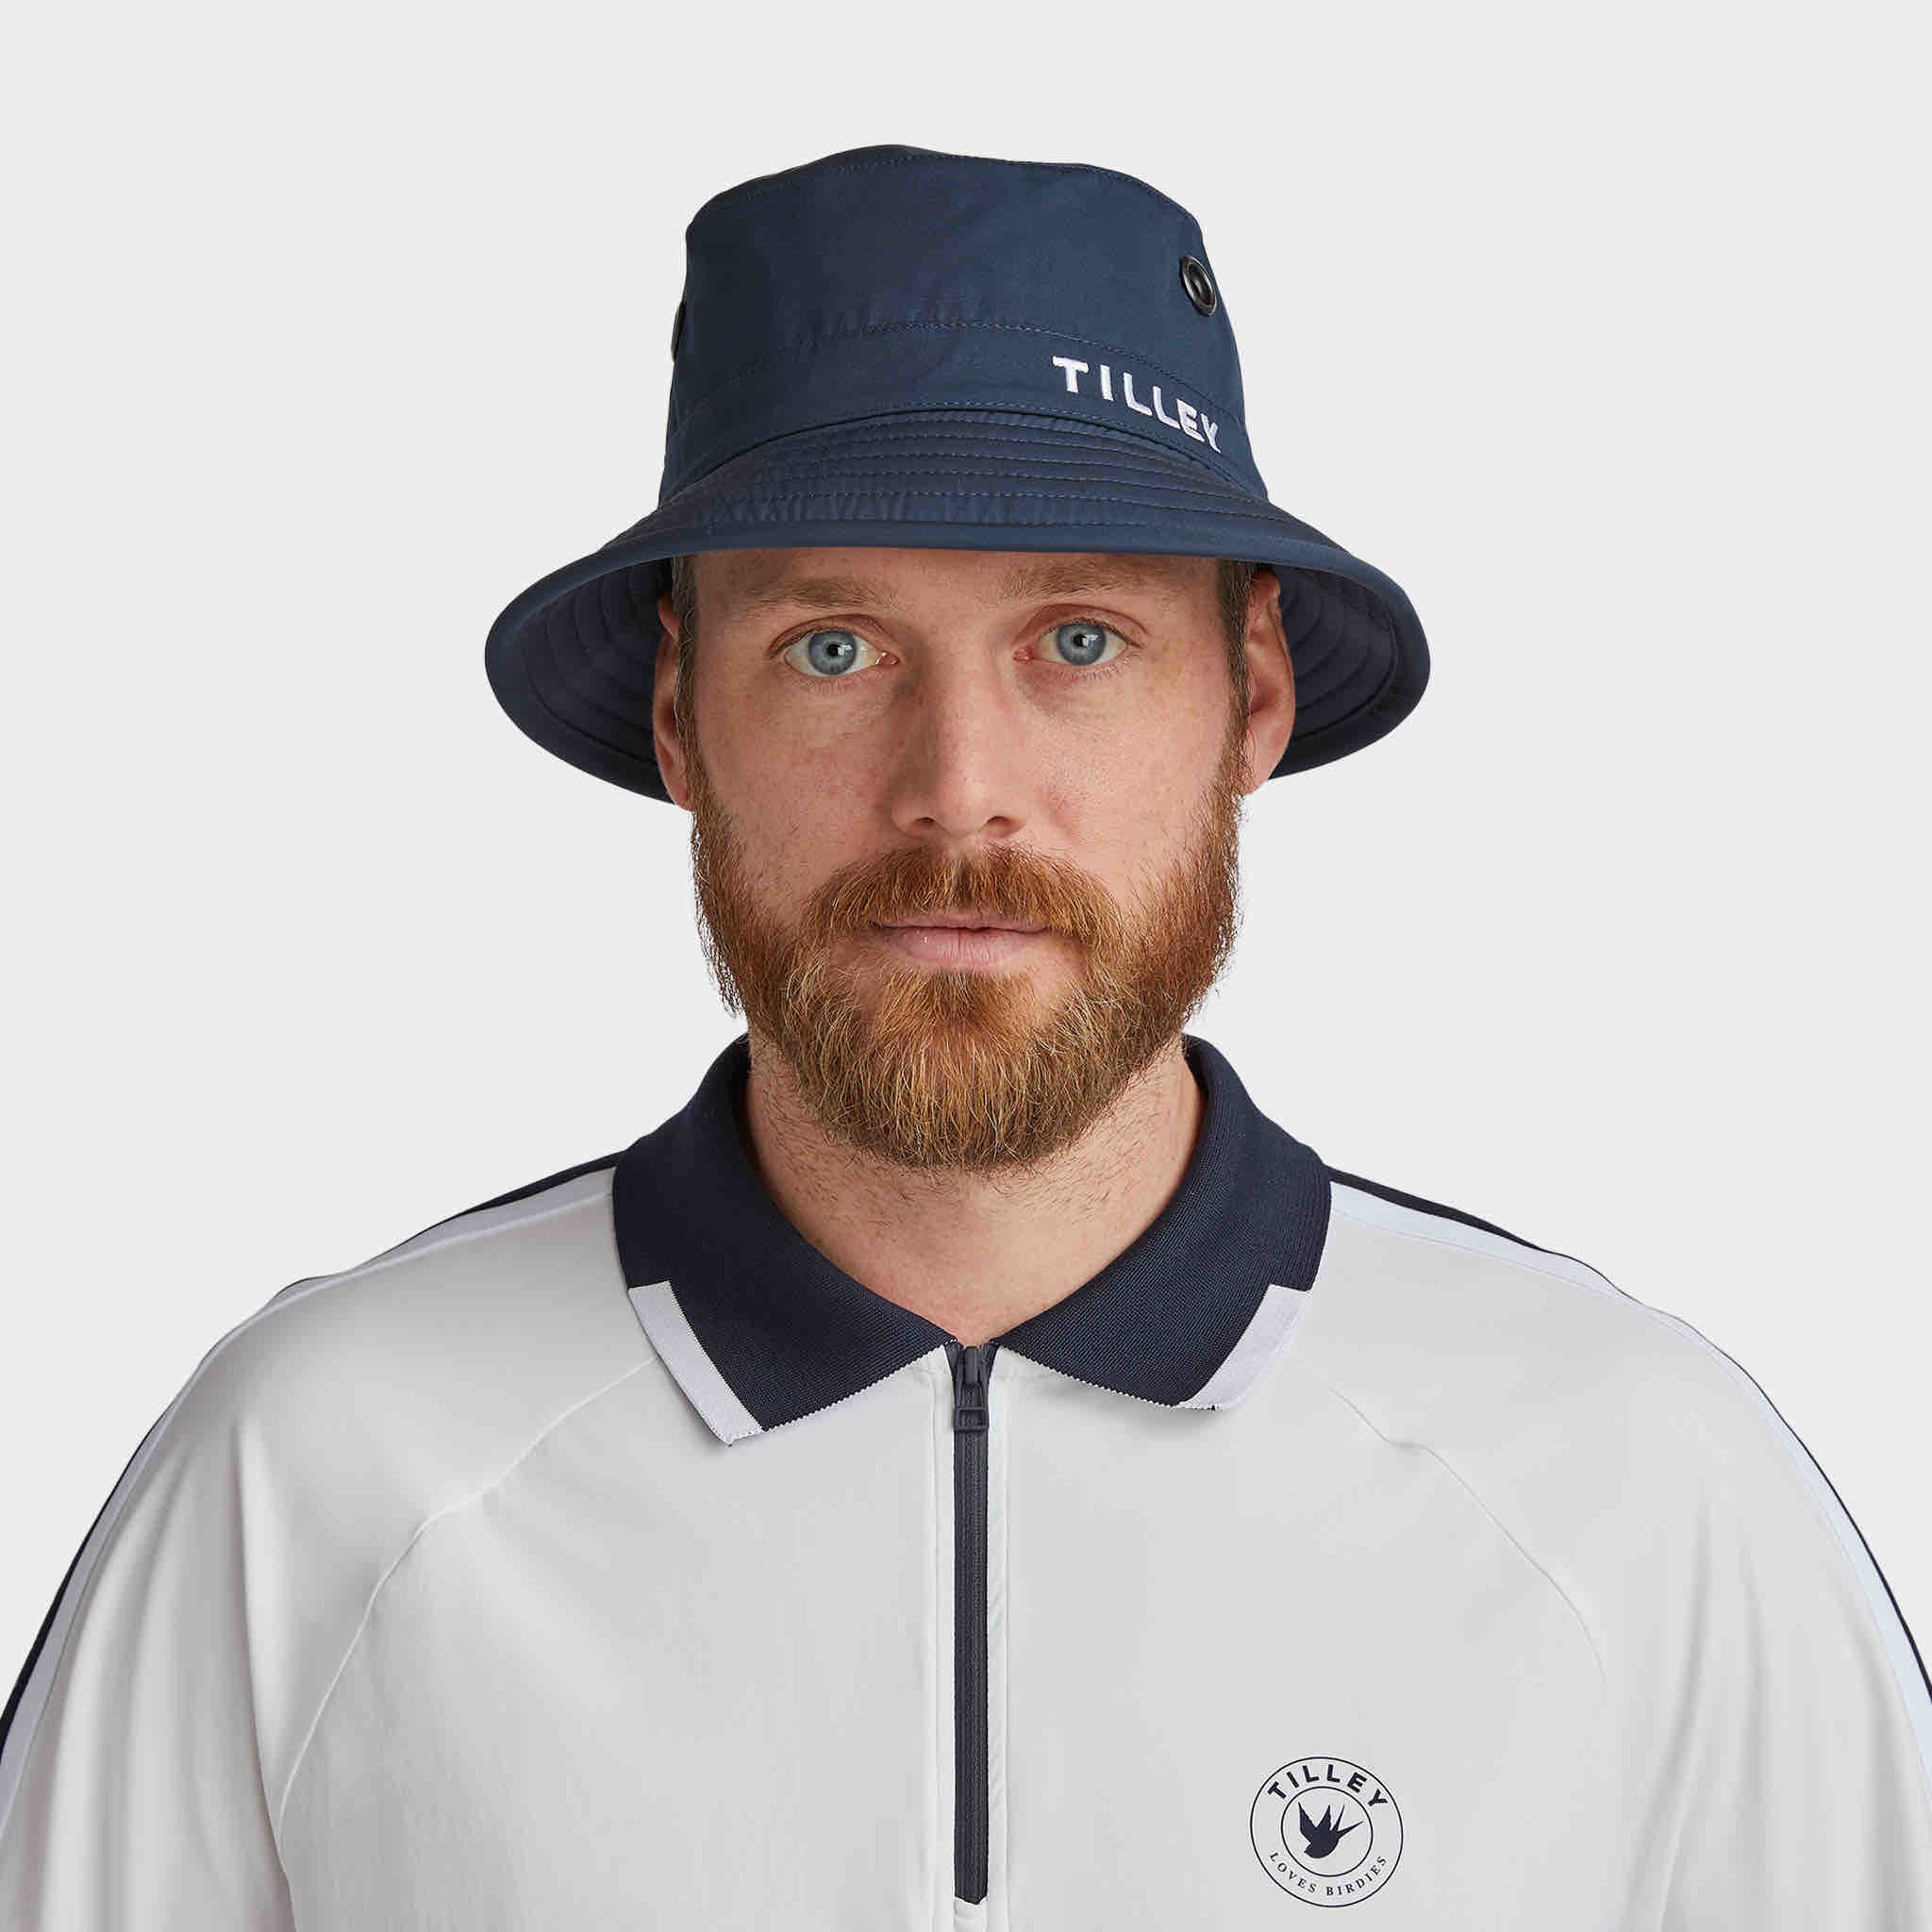 Golf Bucket Hat TILLEY Adjustable, Fast Shipping